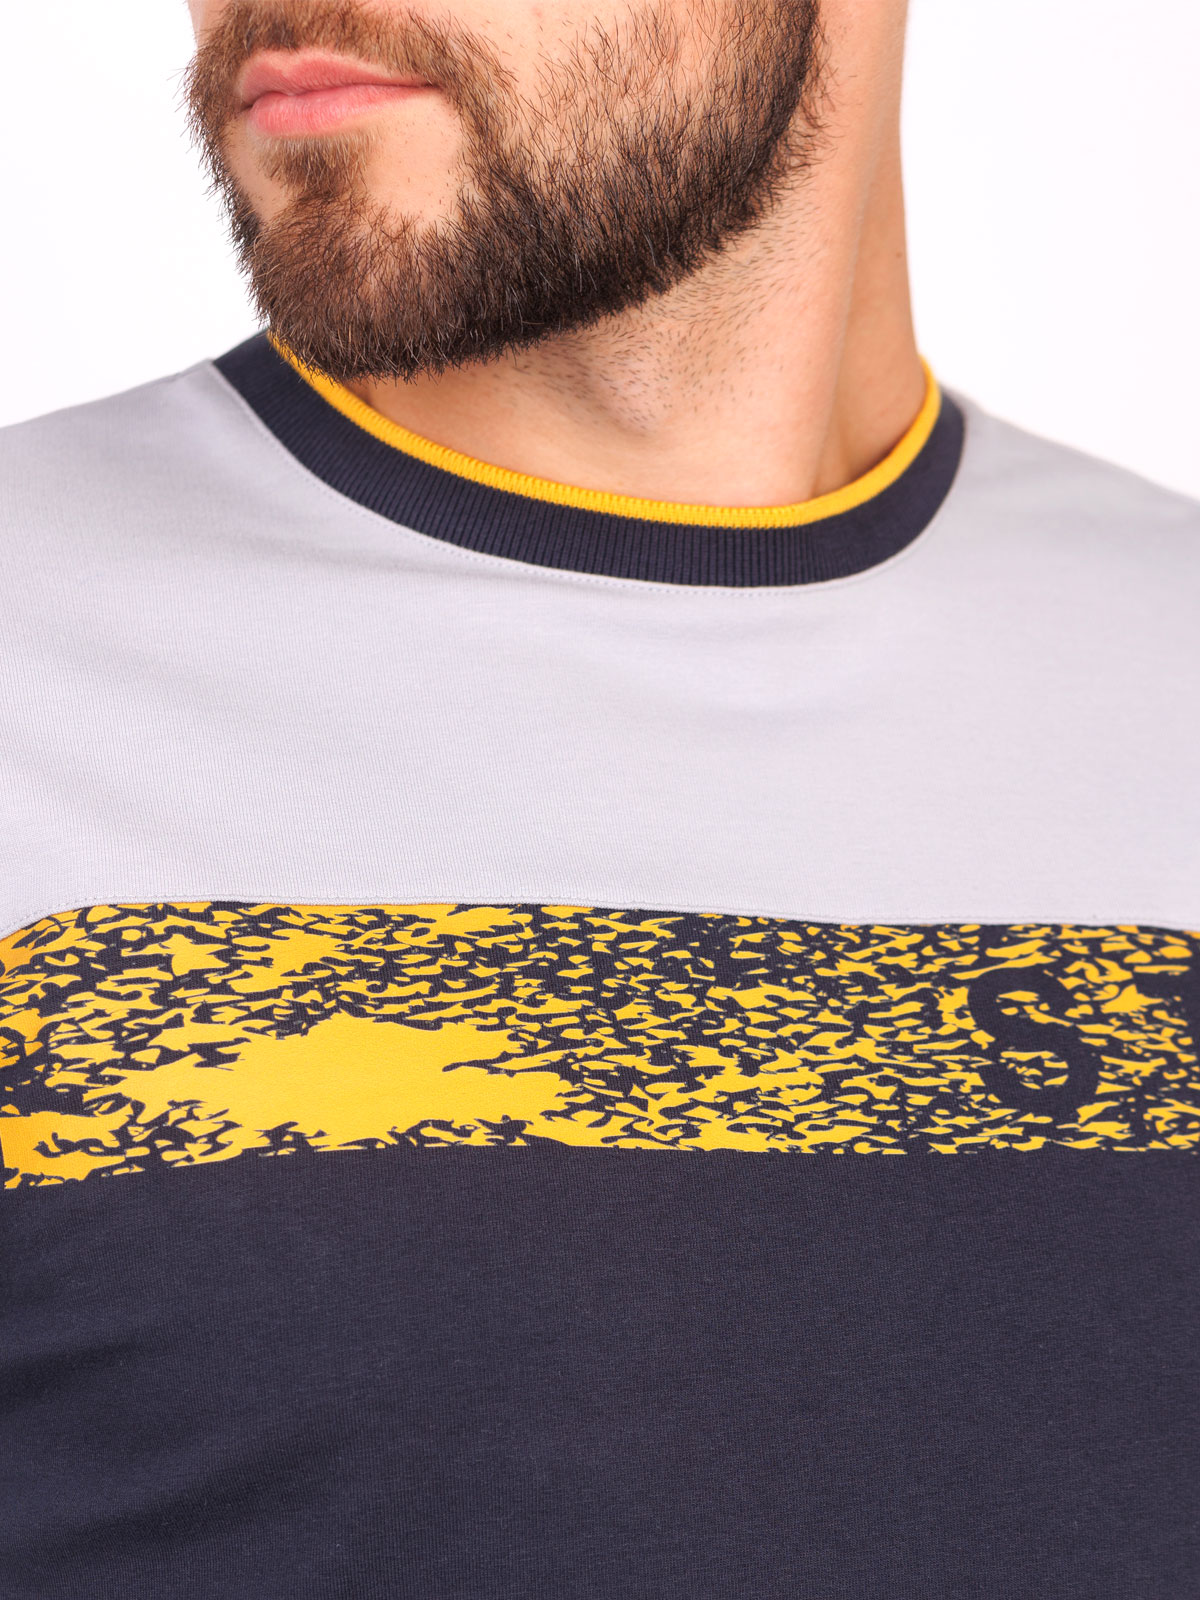 Ανδρική μπλούζα με κίτρινη ρίγα - 42350 € 27.56 img3